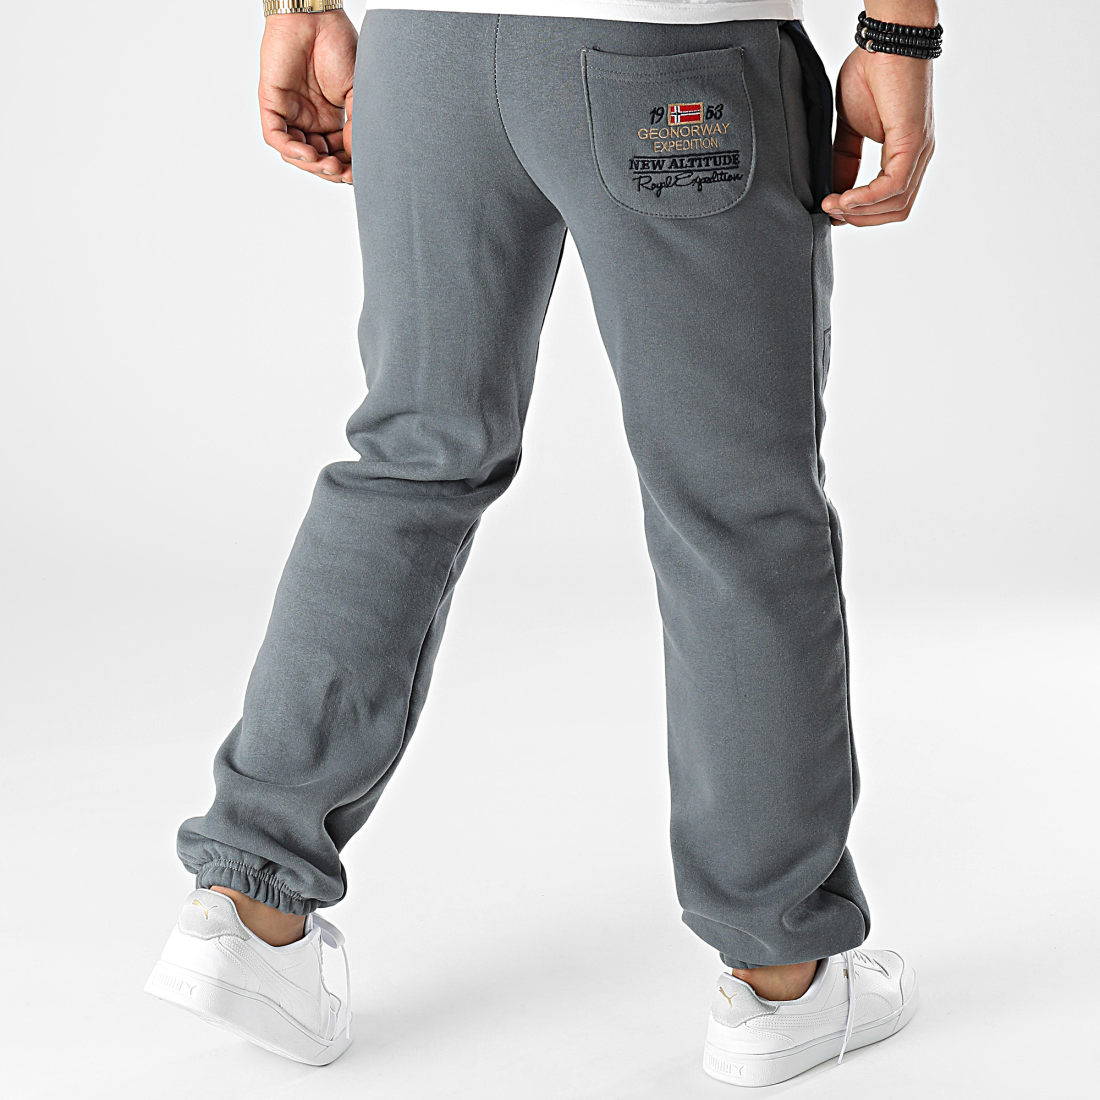 Geographical Norway Myer Pantalon de survêtement pantalon de Sport Loisirs pour homme